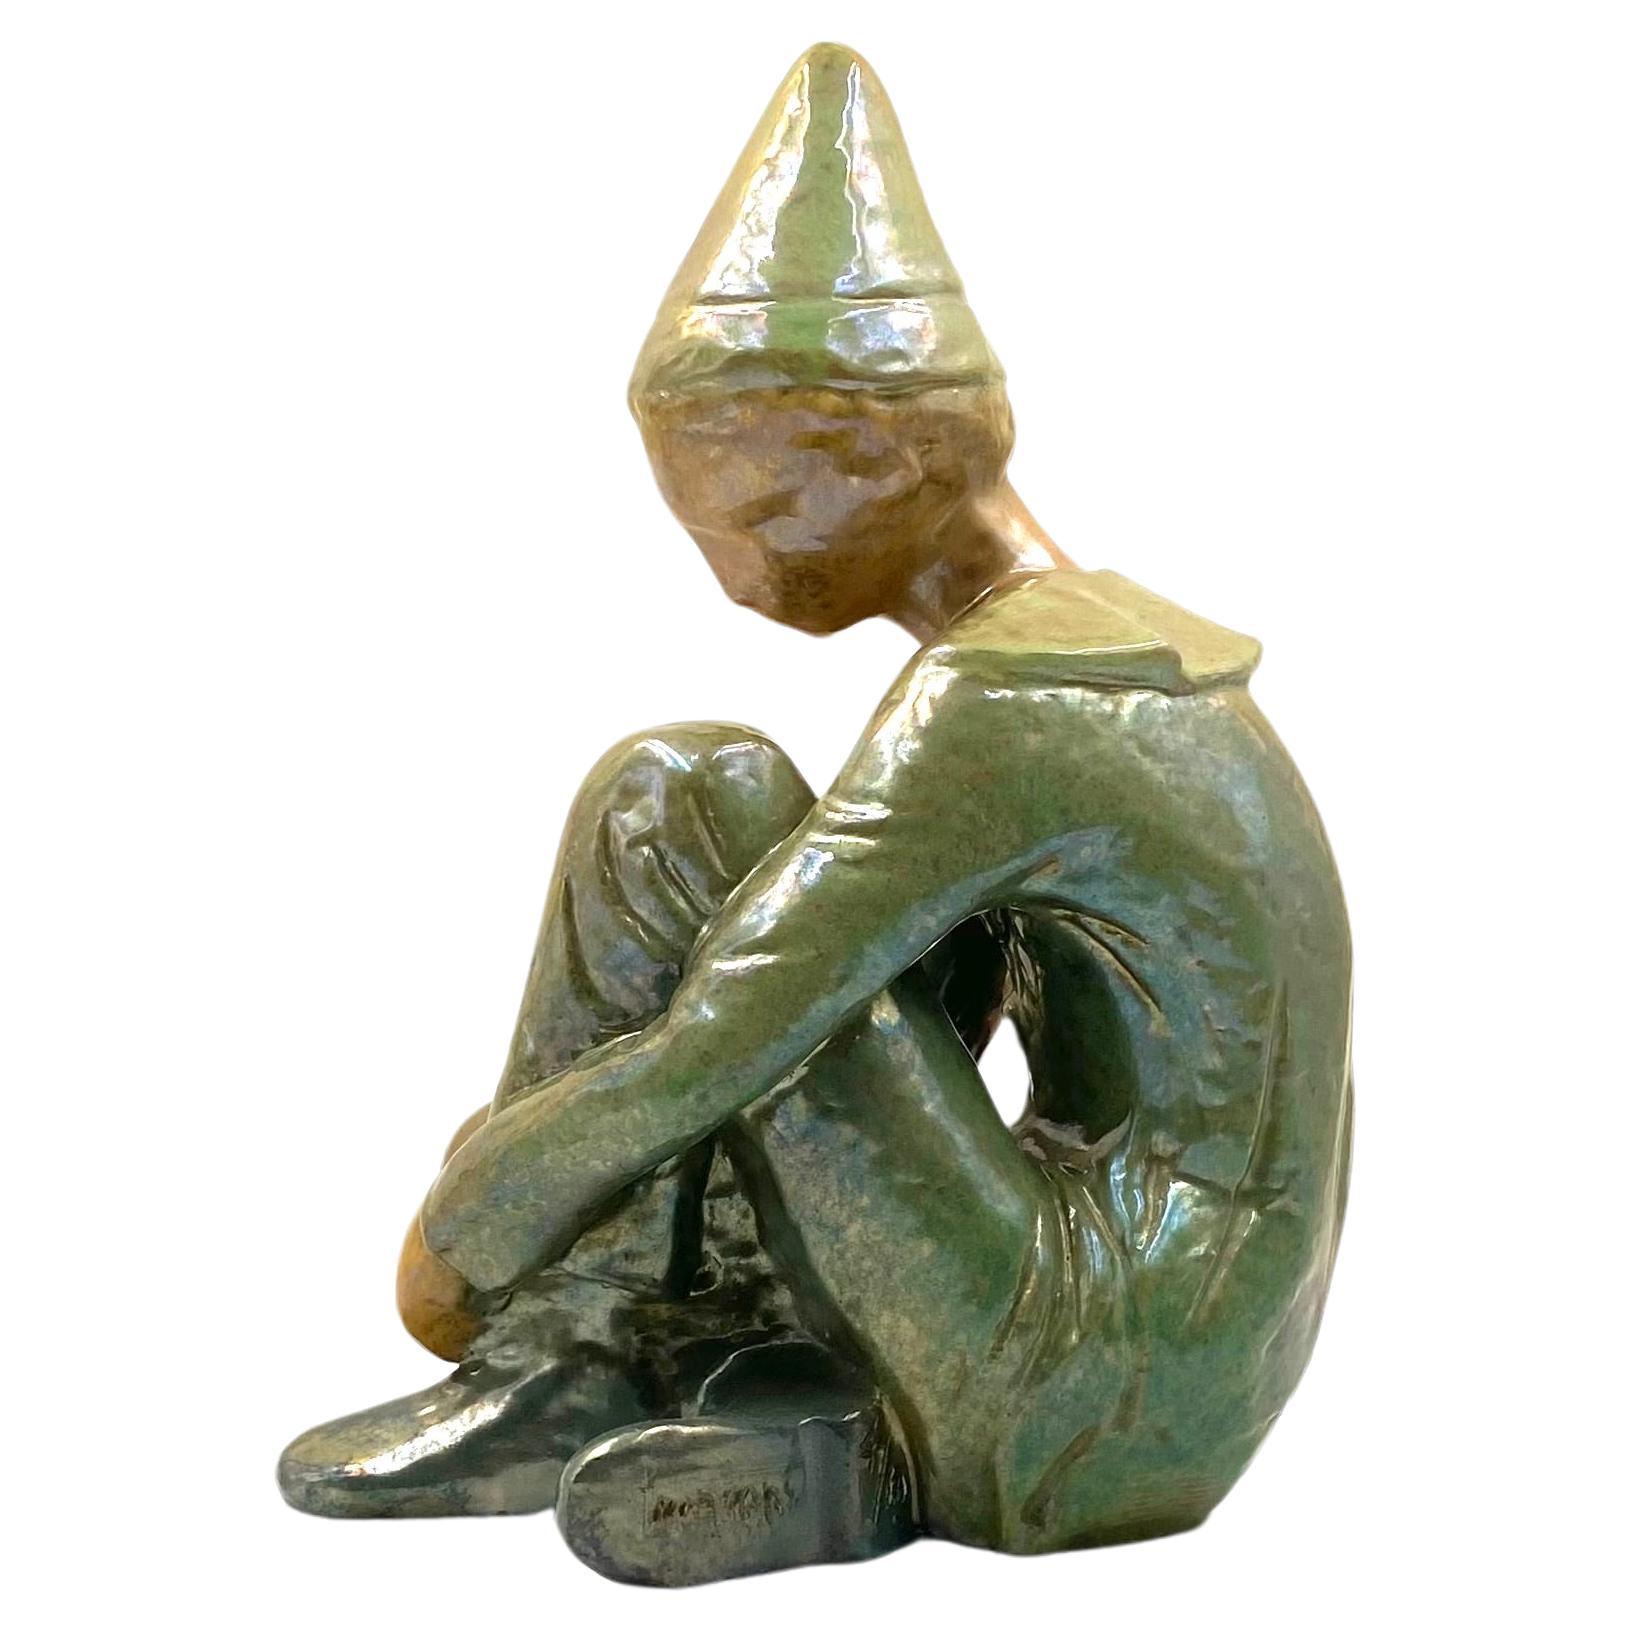 Figurine verte en céramique représentant un garçon assis, Giordano Tronconi, Faenza Italie, années 1950